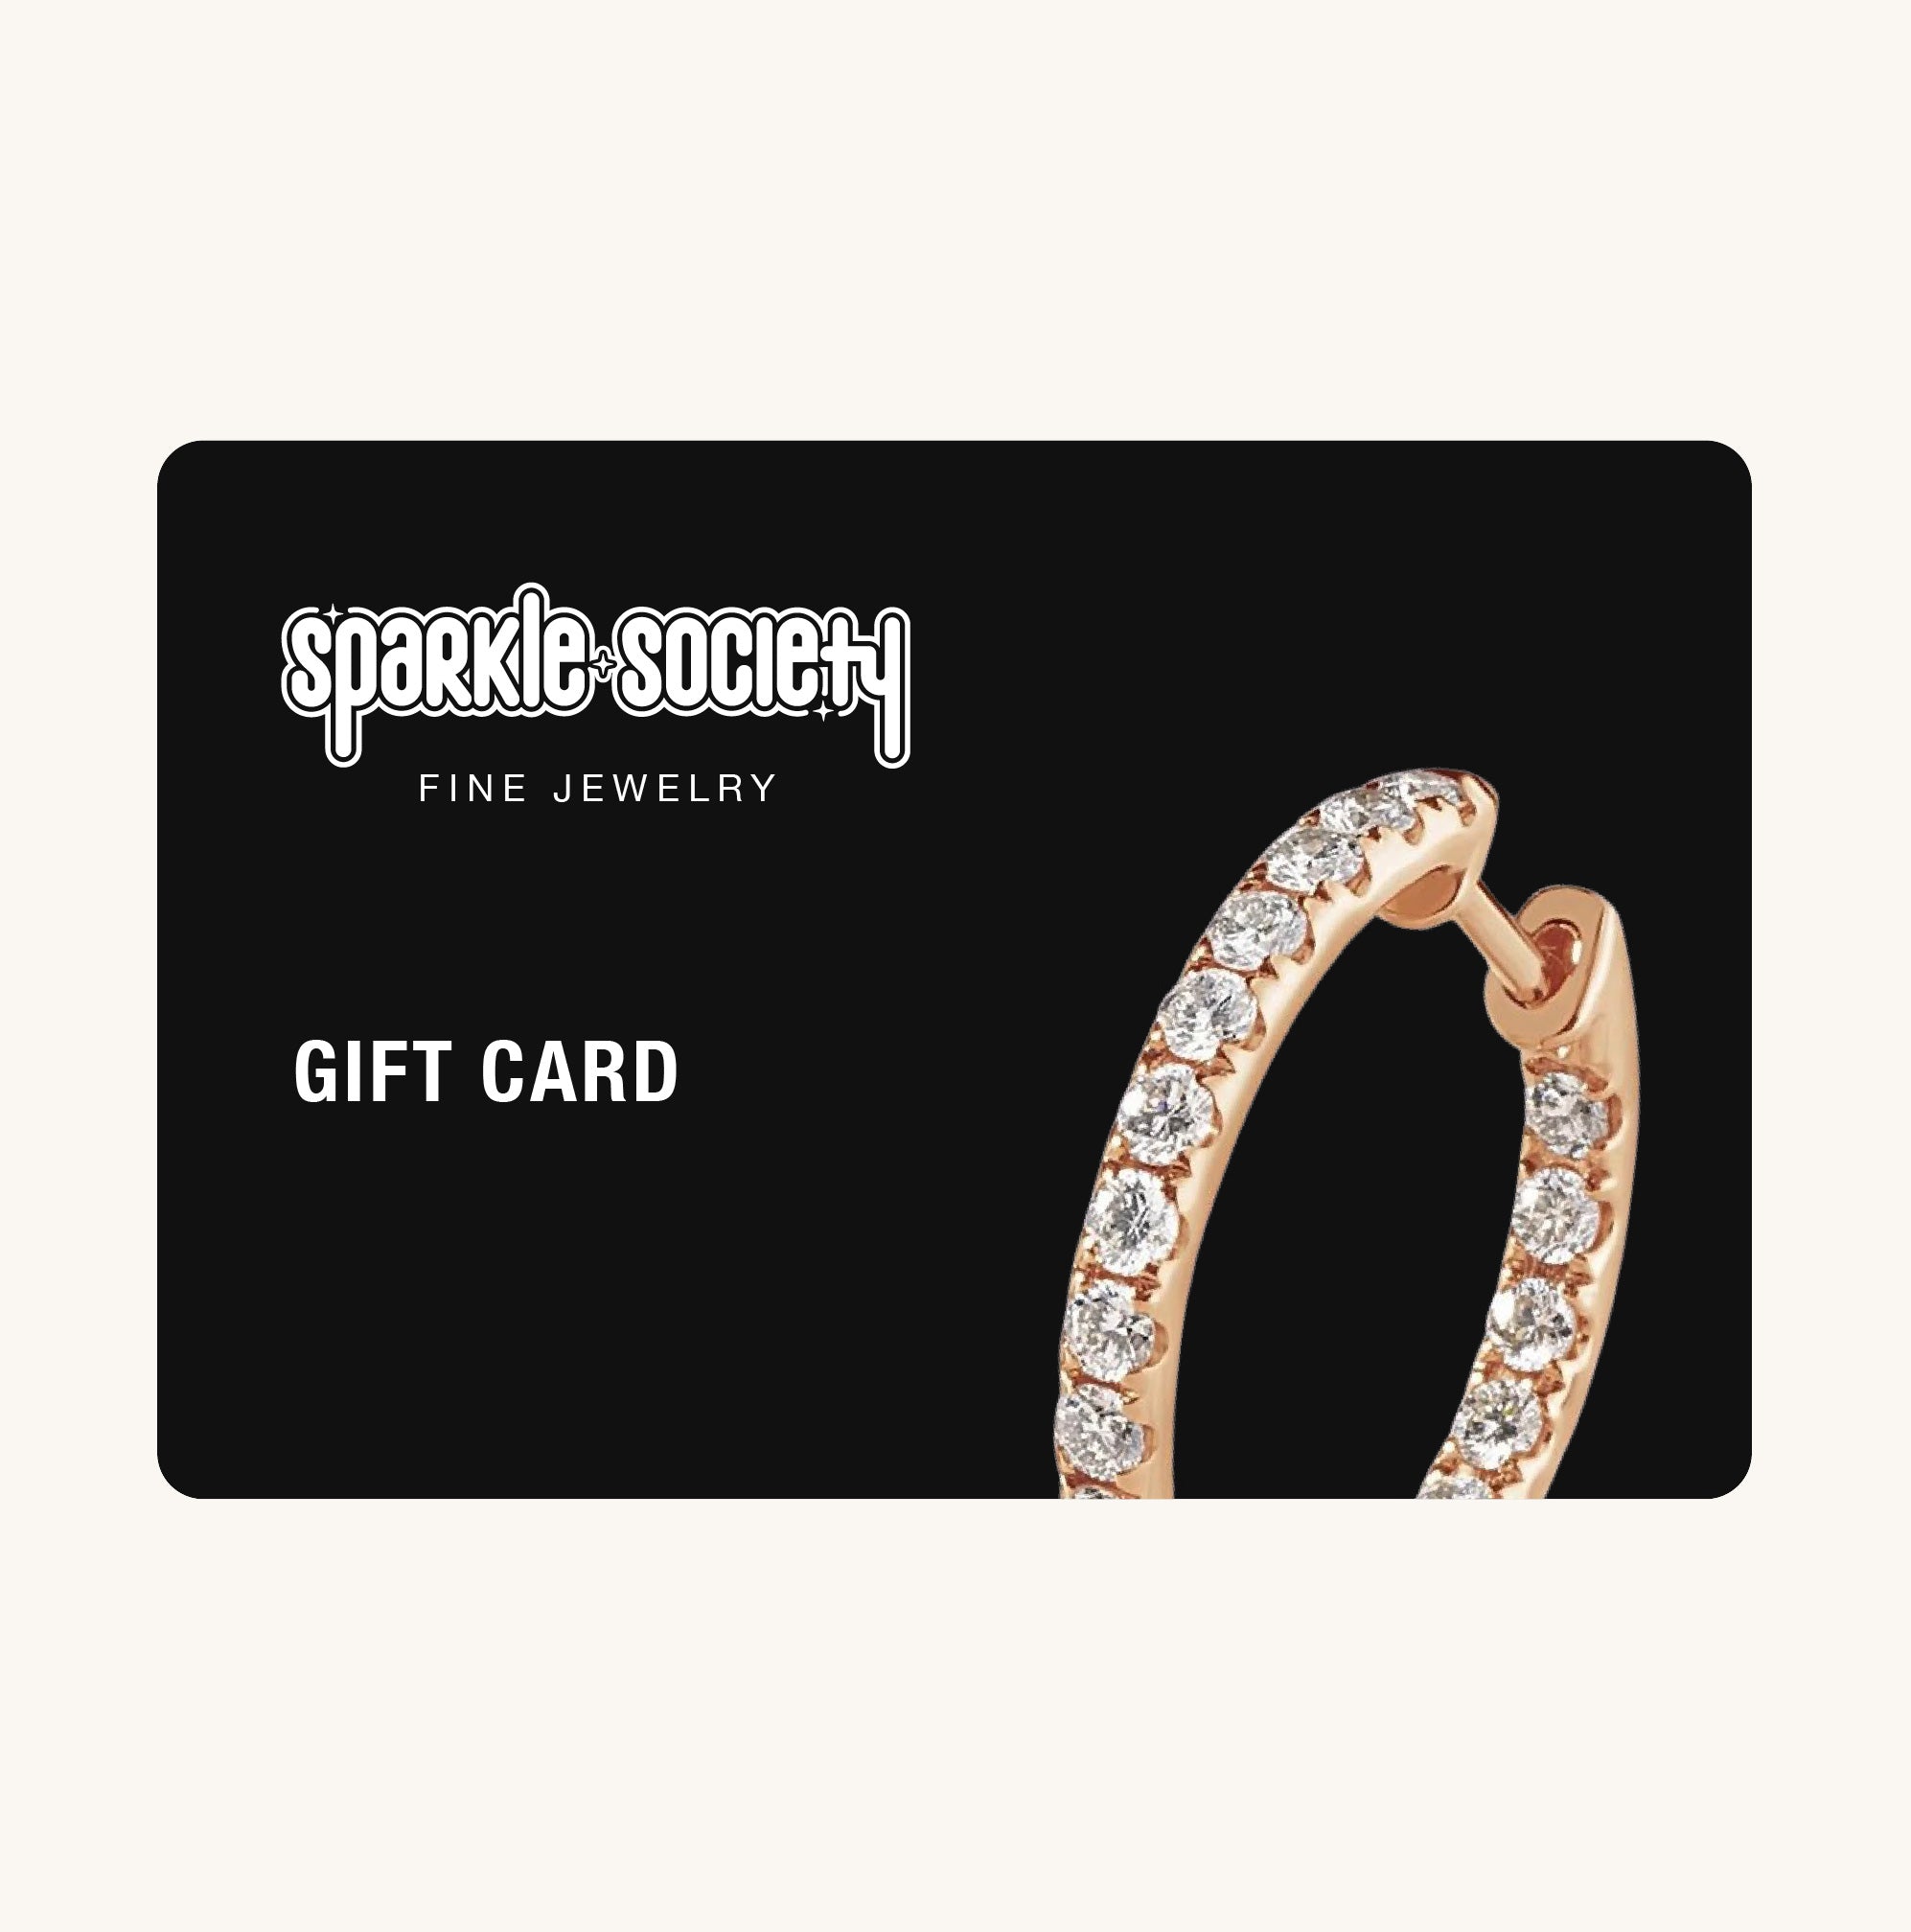 Gift Card - Sparkle Society